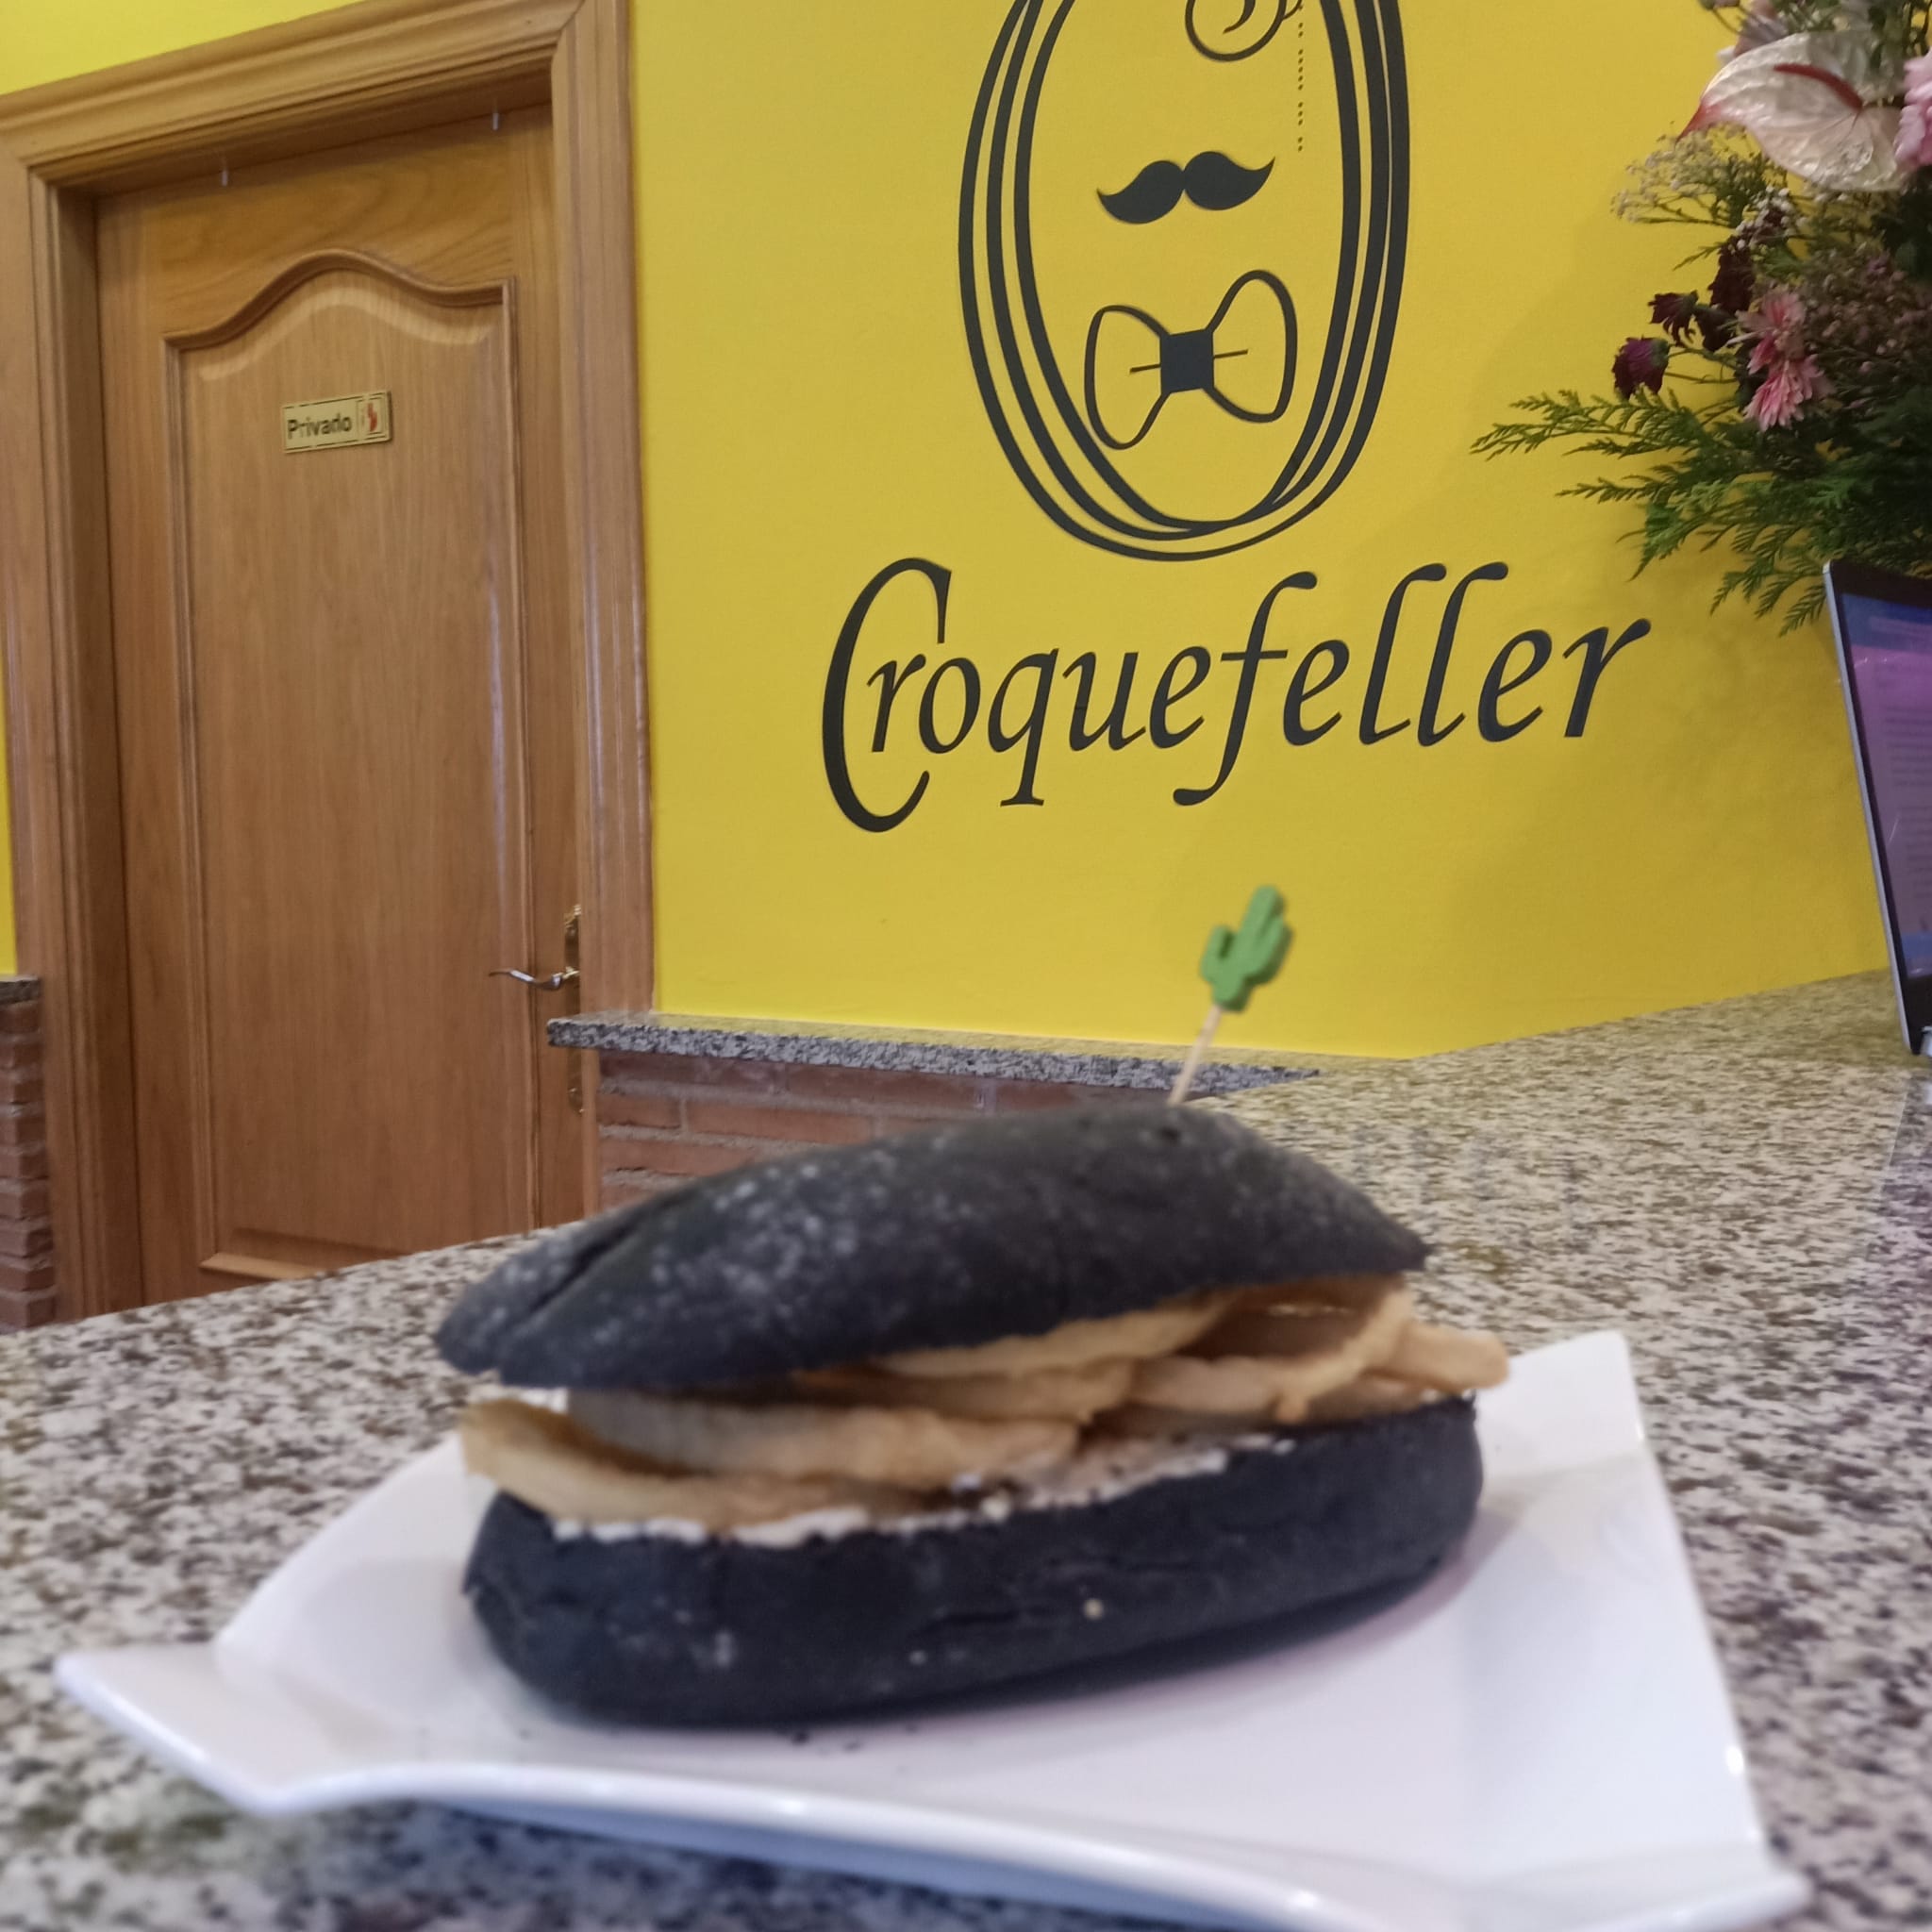 Croquefeller, croquetas gourmet en el Casco Antiguo de Talavera